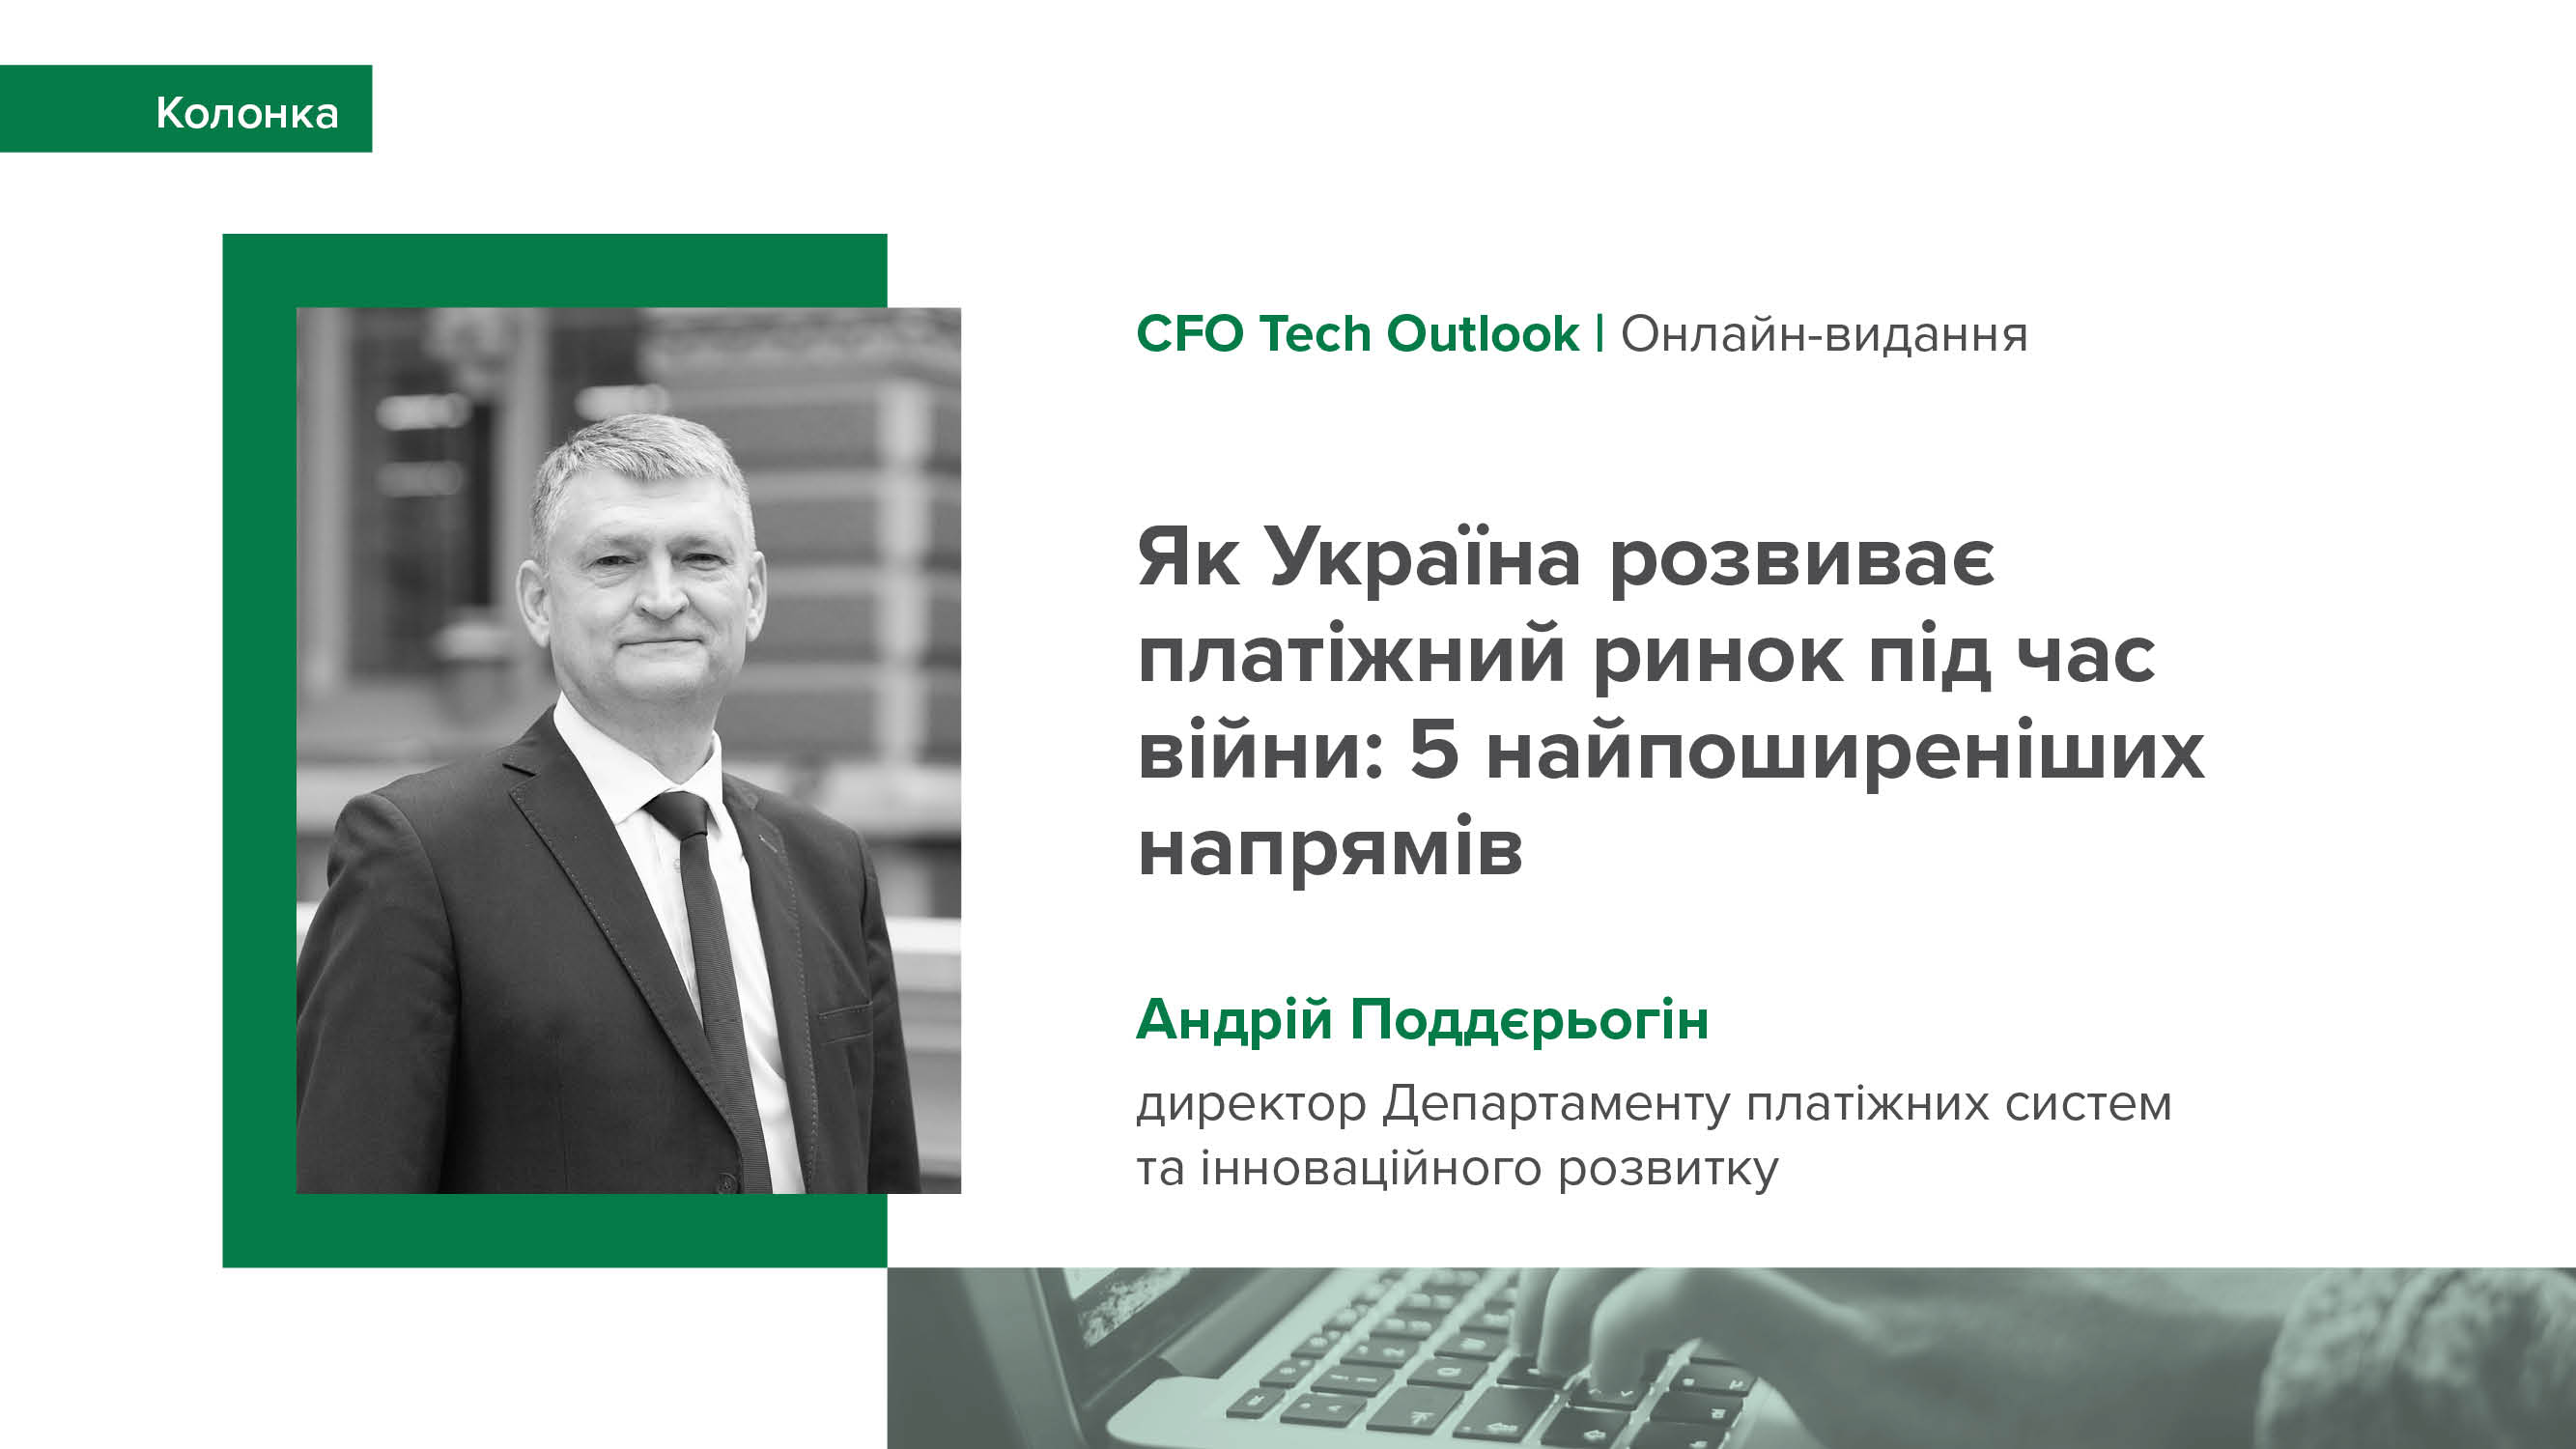 Колонка Андрія Поддєрьогіна "Як Україна розвиває платіжний ринок під час війни: 5 найпоширеніших напрямів" для CFO Tech Outlook (англійською)